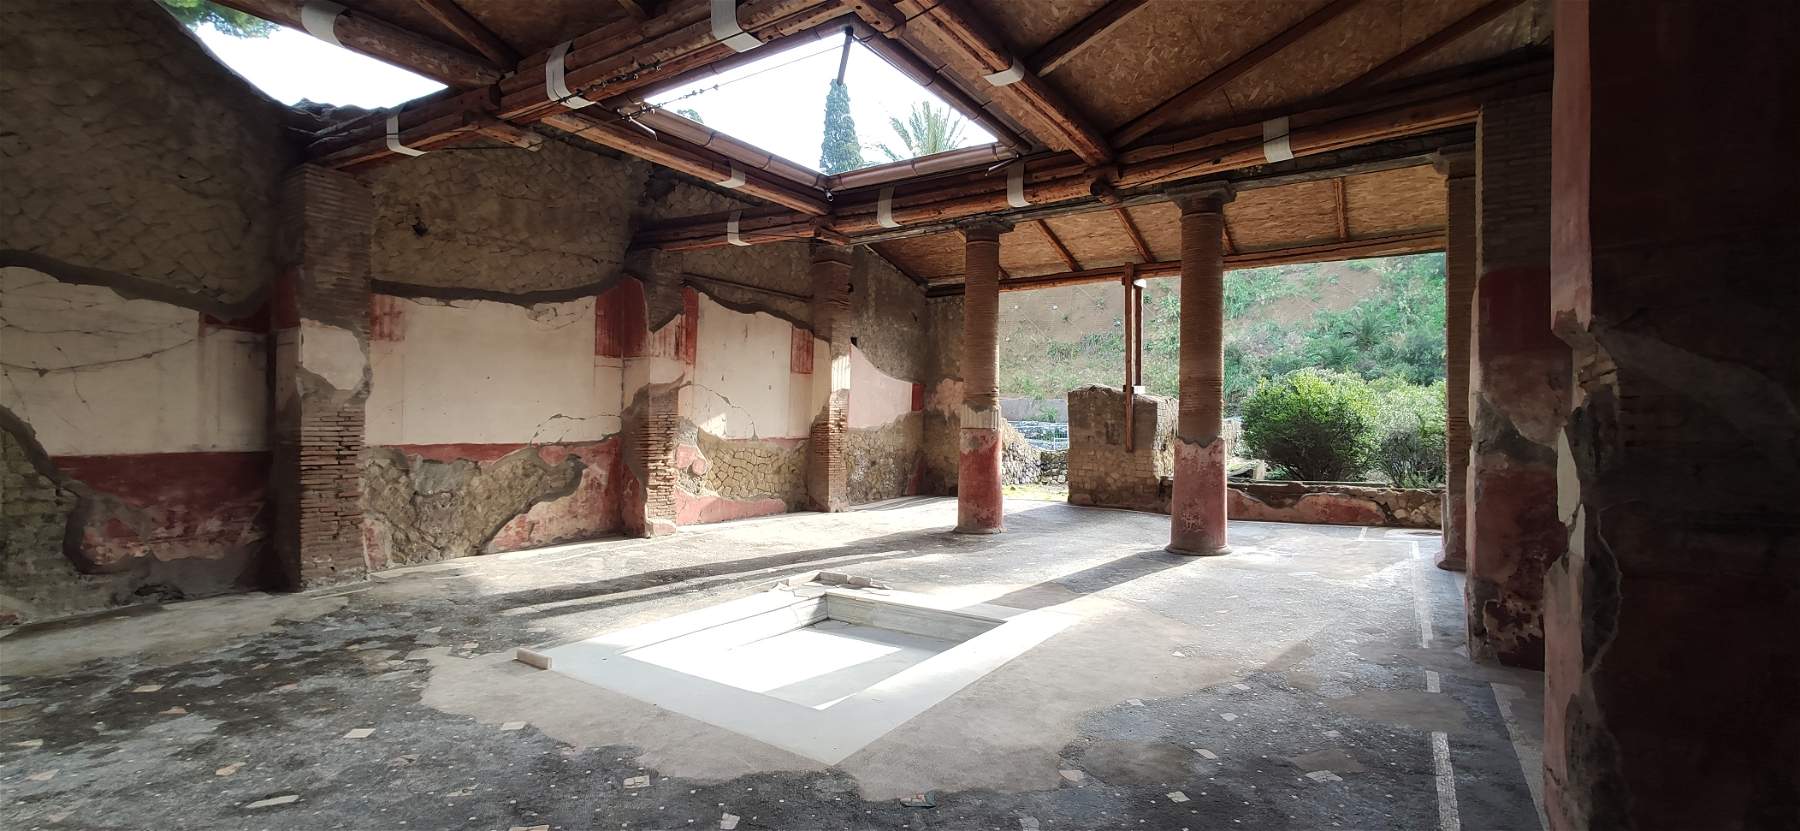 Herculanum, la précieuse maison des pierres précieuses rouvre ses portes après restauration